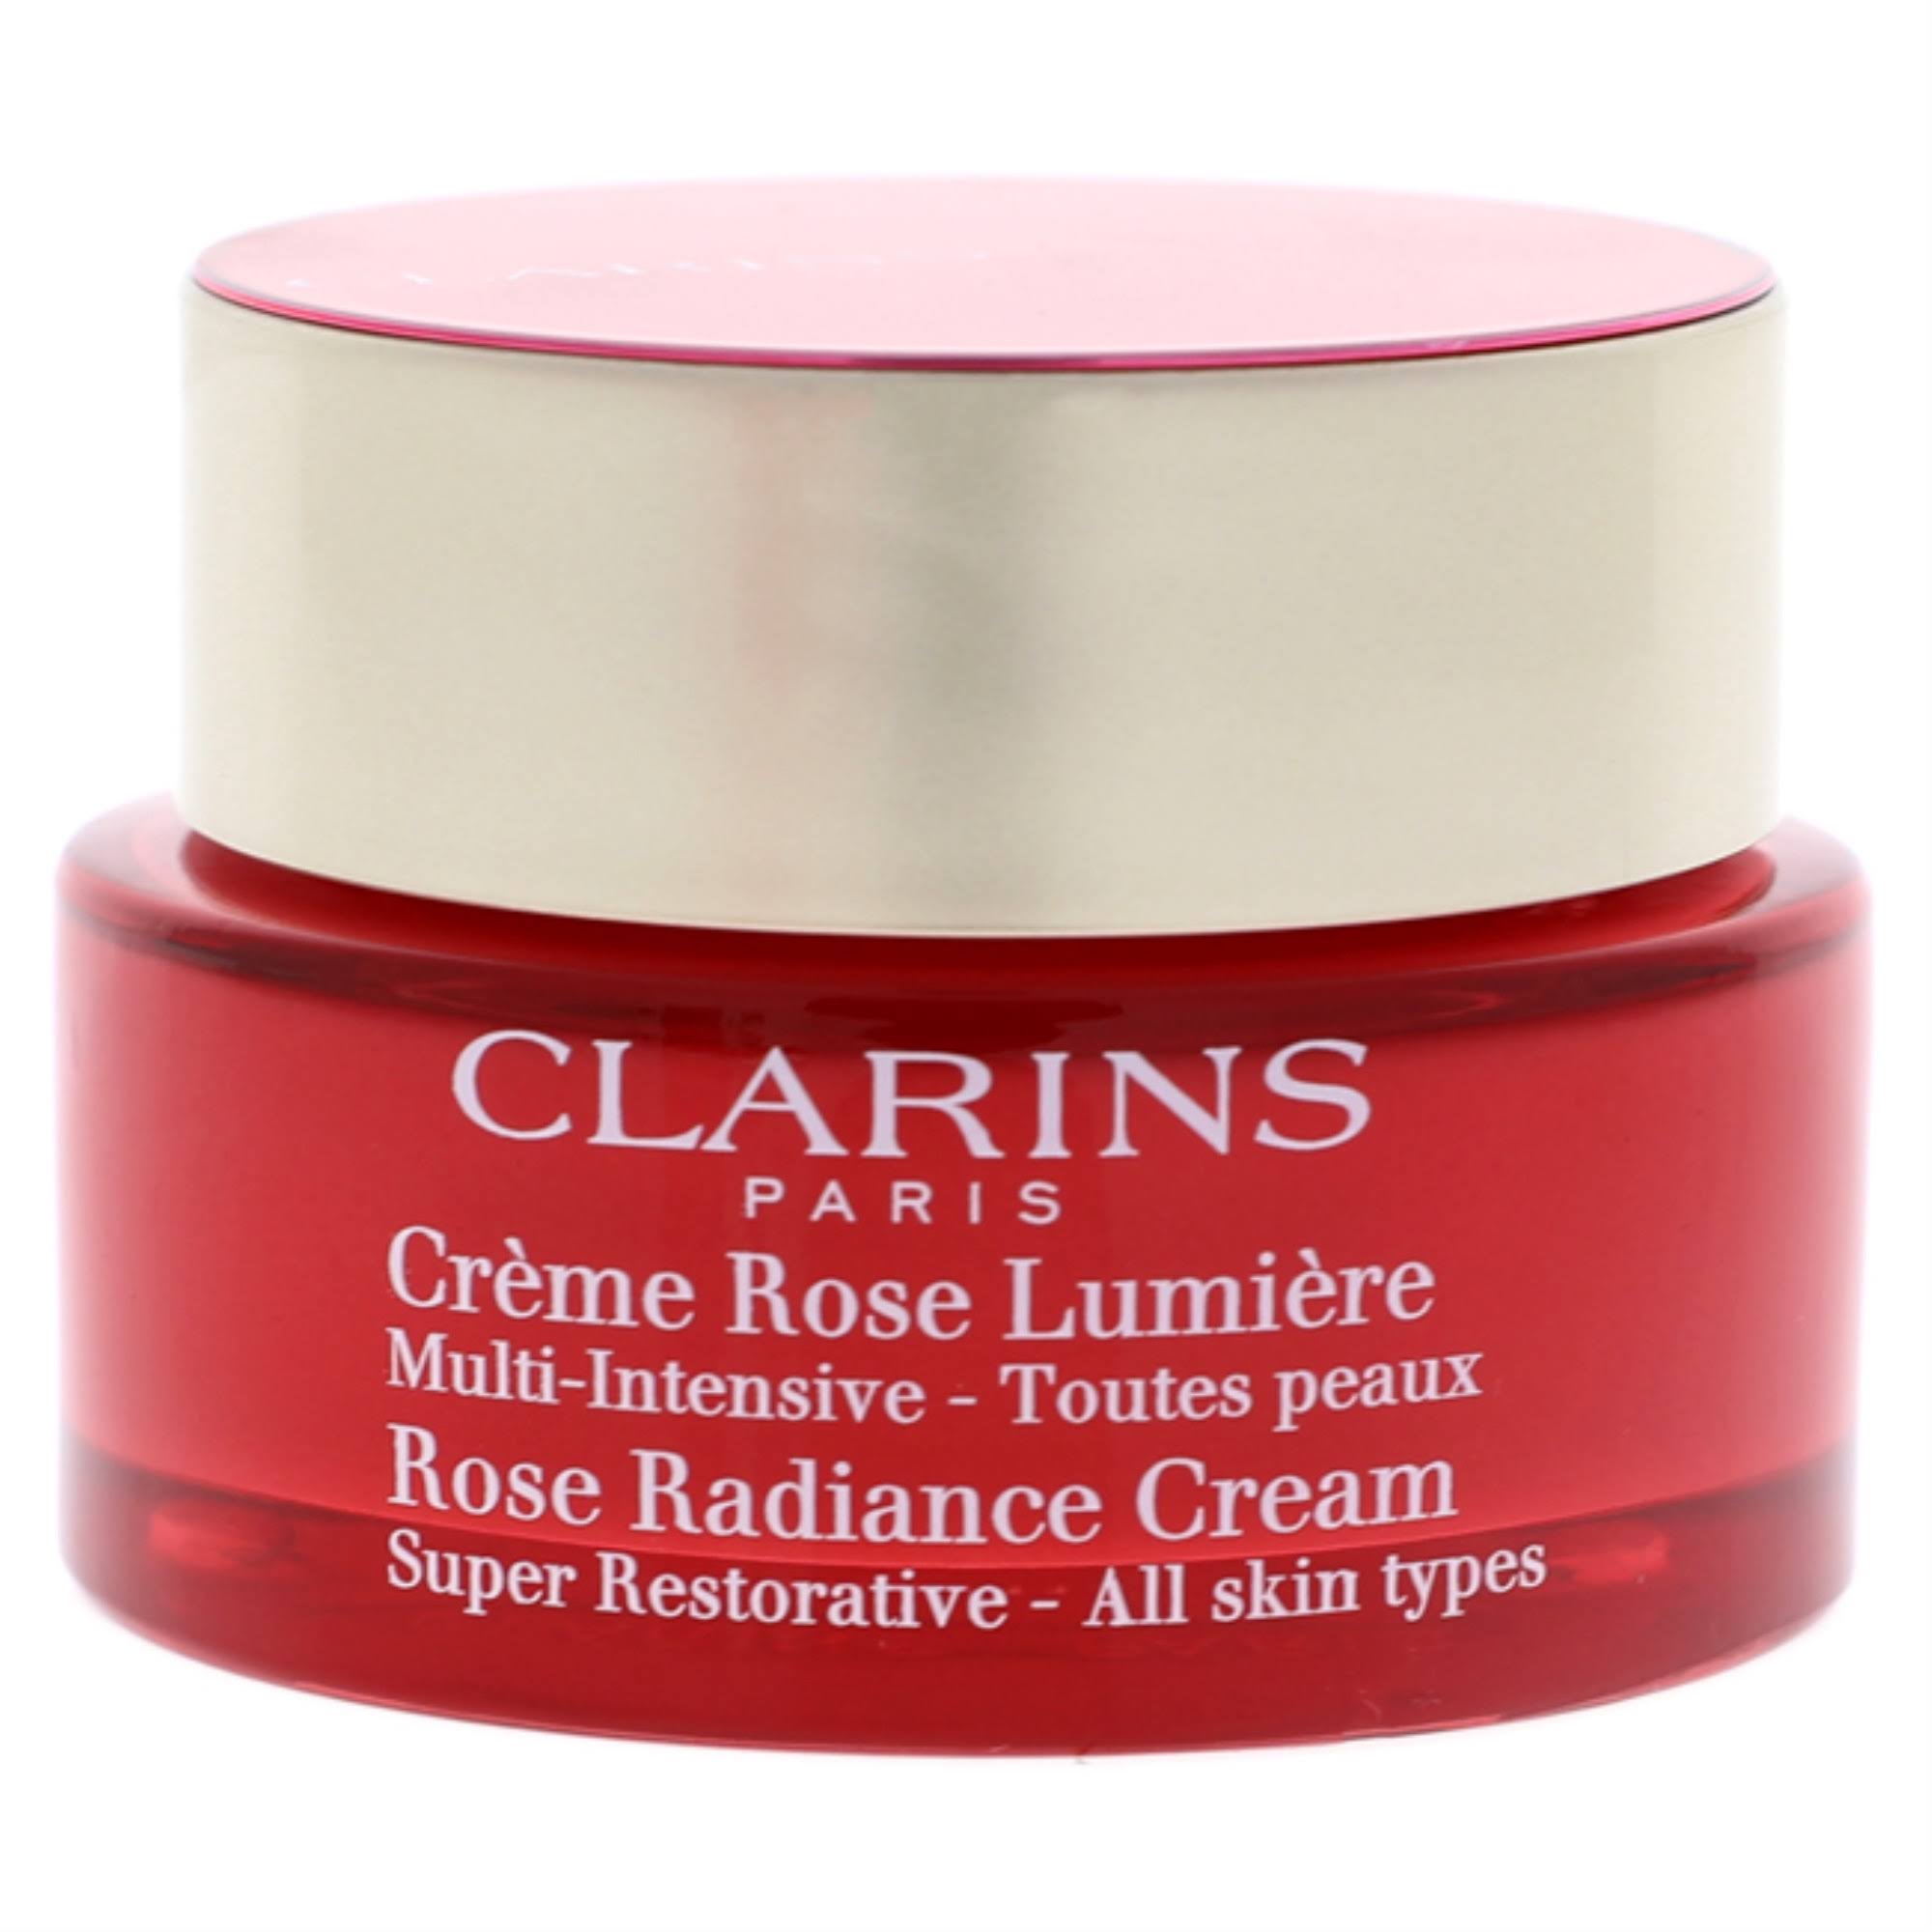 CLARINS Super Restorative Rose Radiance Cream, 1.7-Oz.